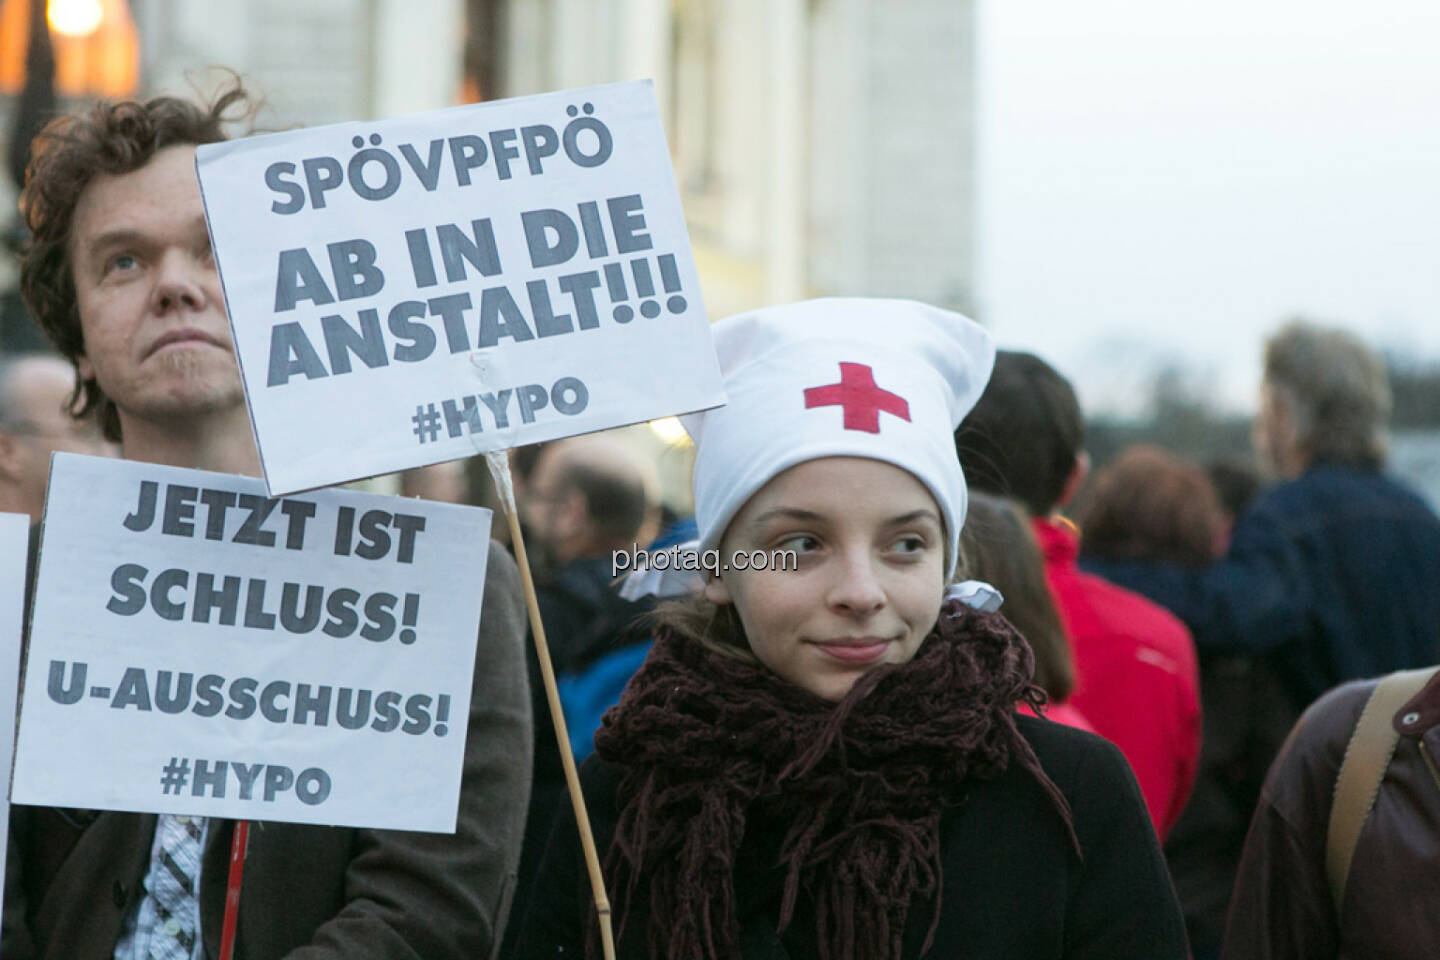 Jetzt ist Schluss - Hypo Demonstration in Wien am 18.03.2014